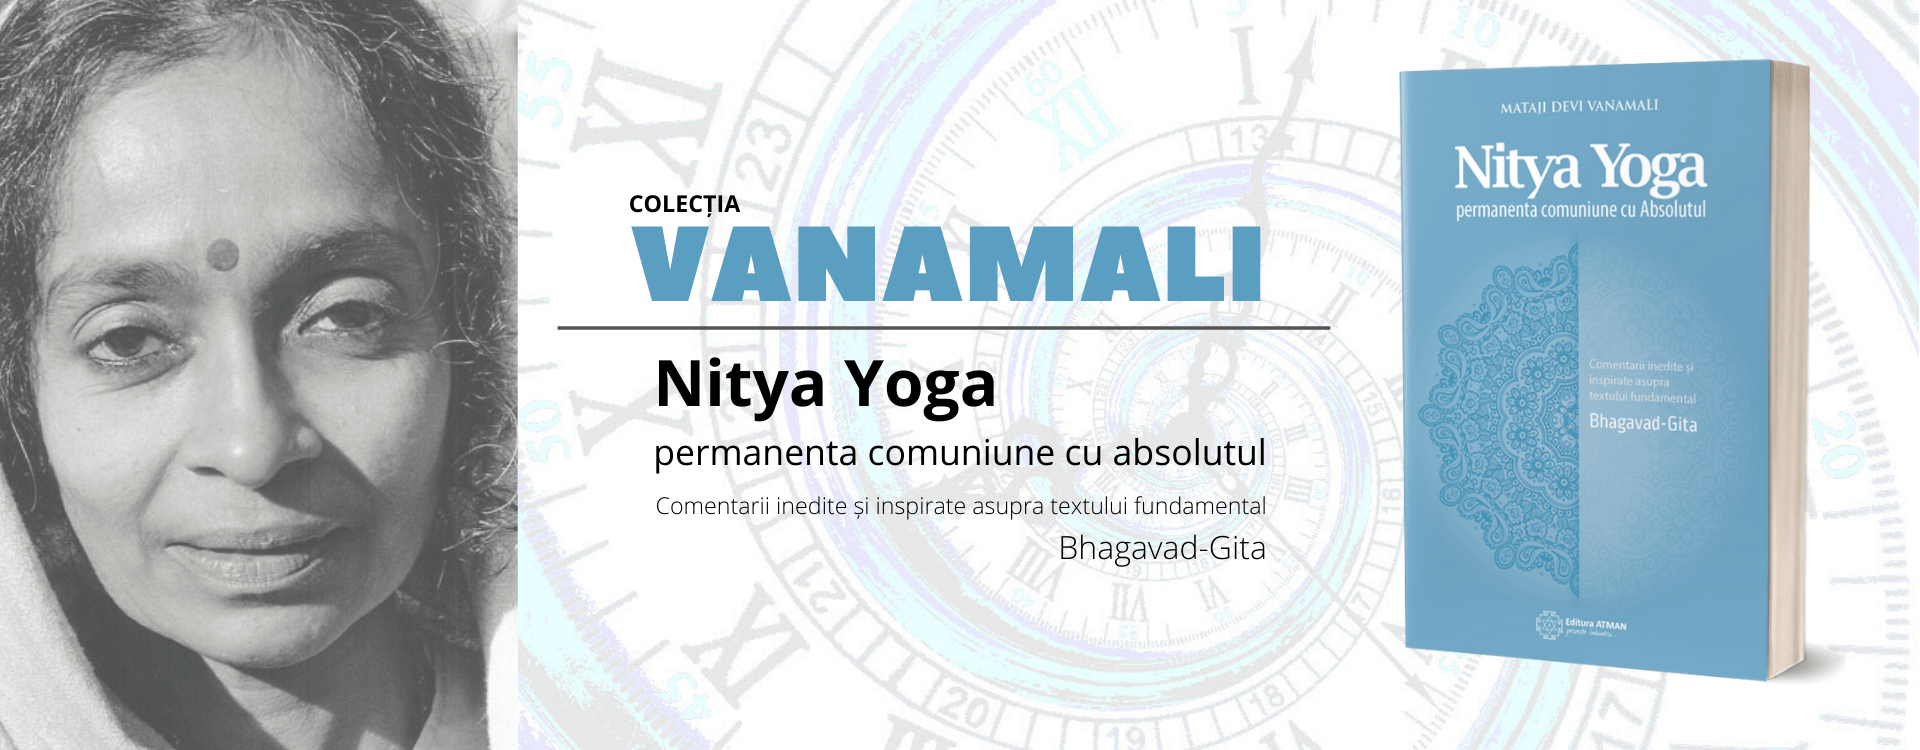 Nouă apariție editorială: Nitya Yoga, de Mataji Devi Vanamali